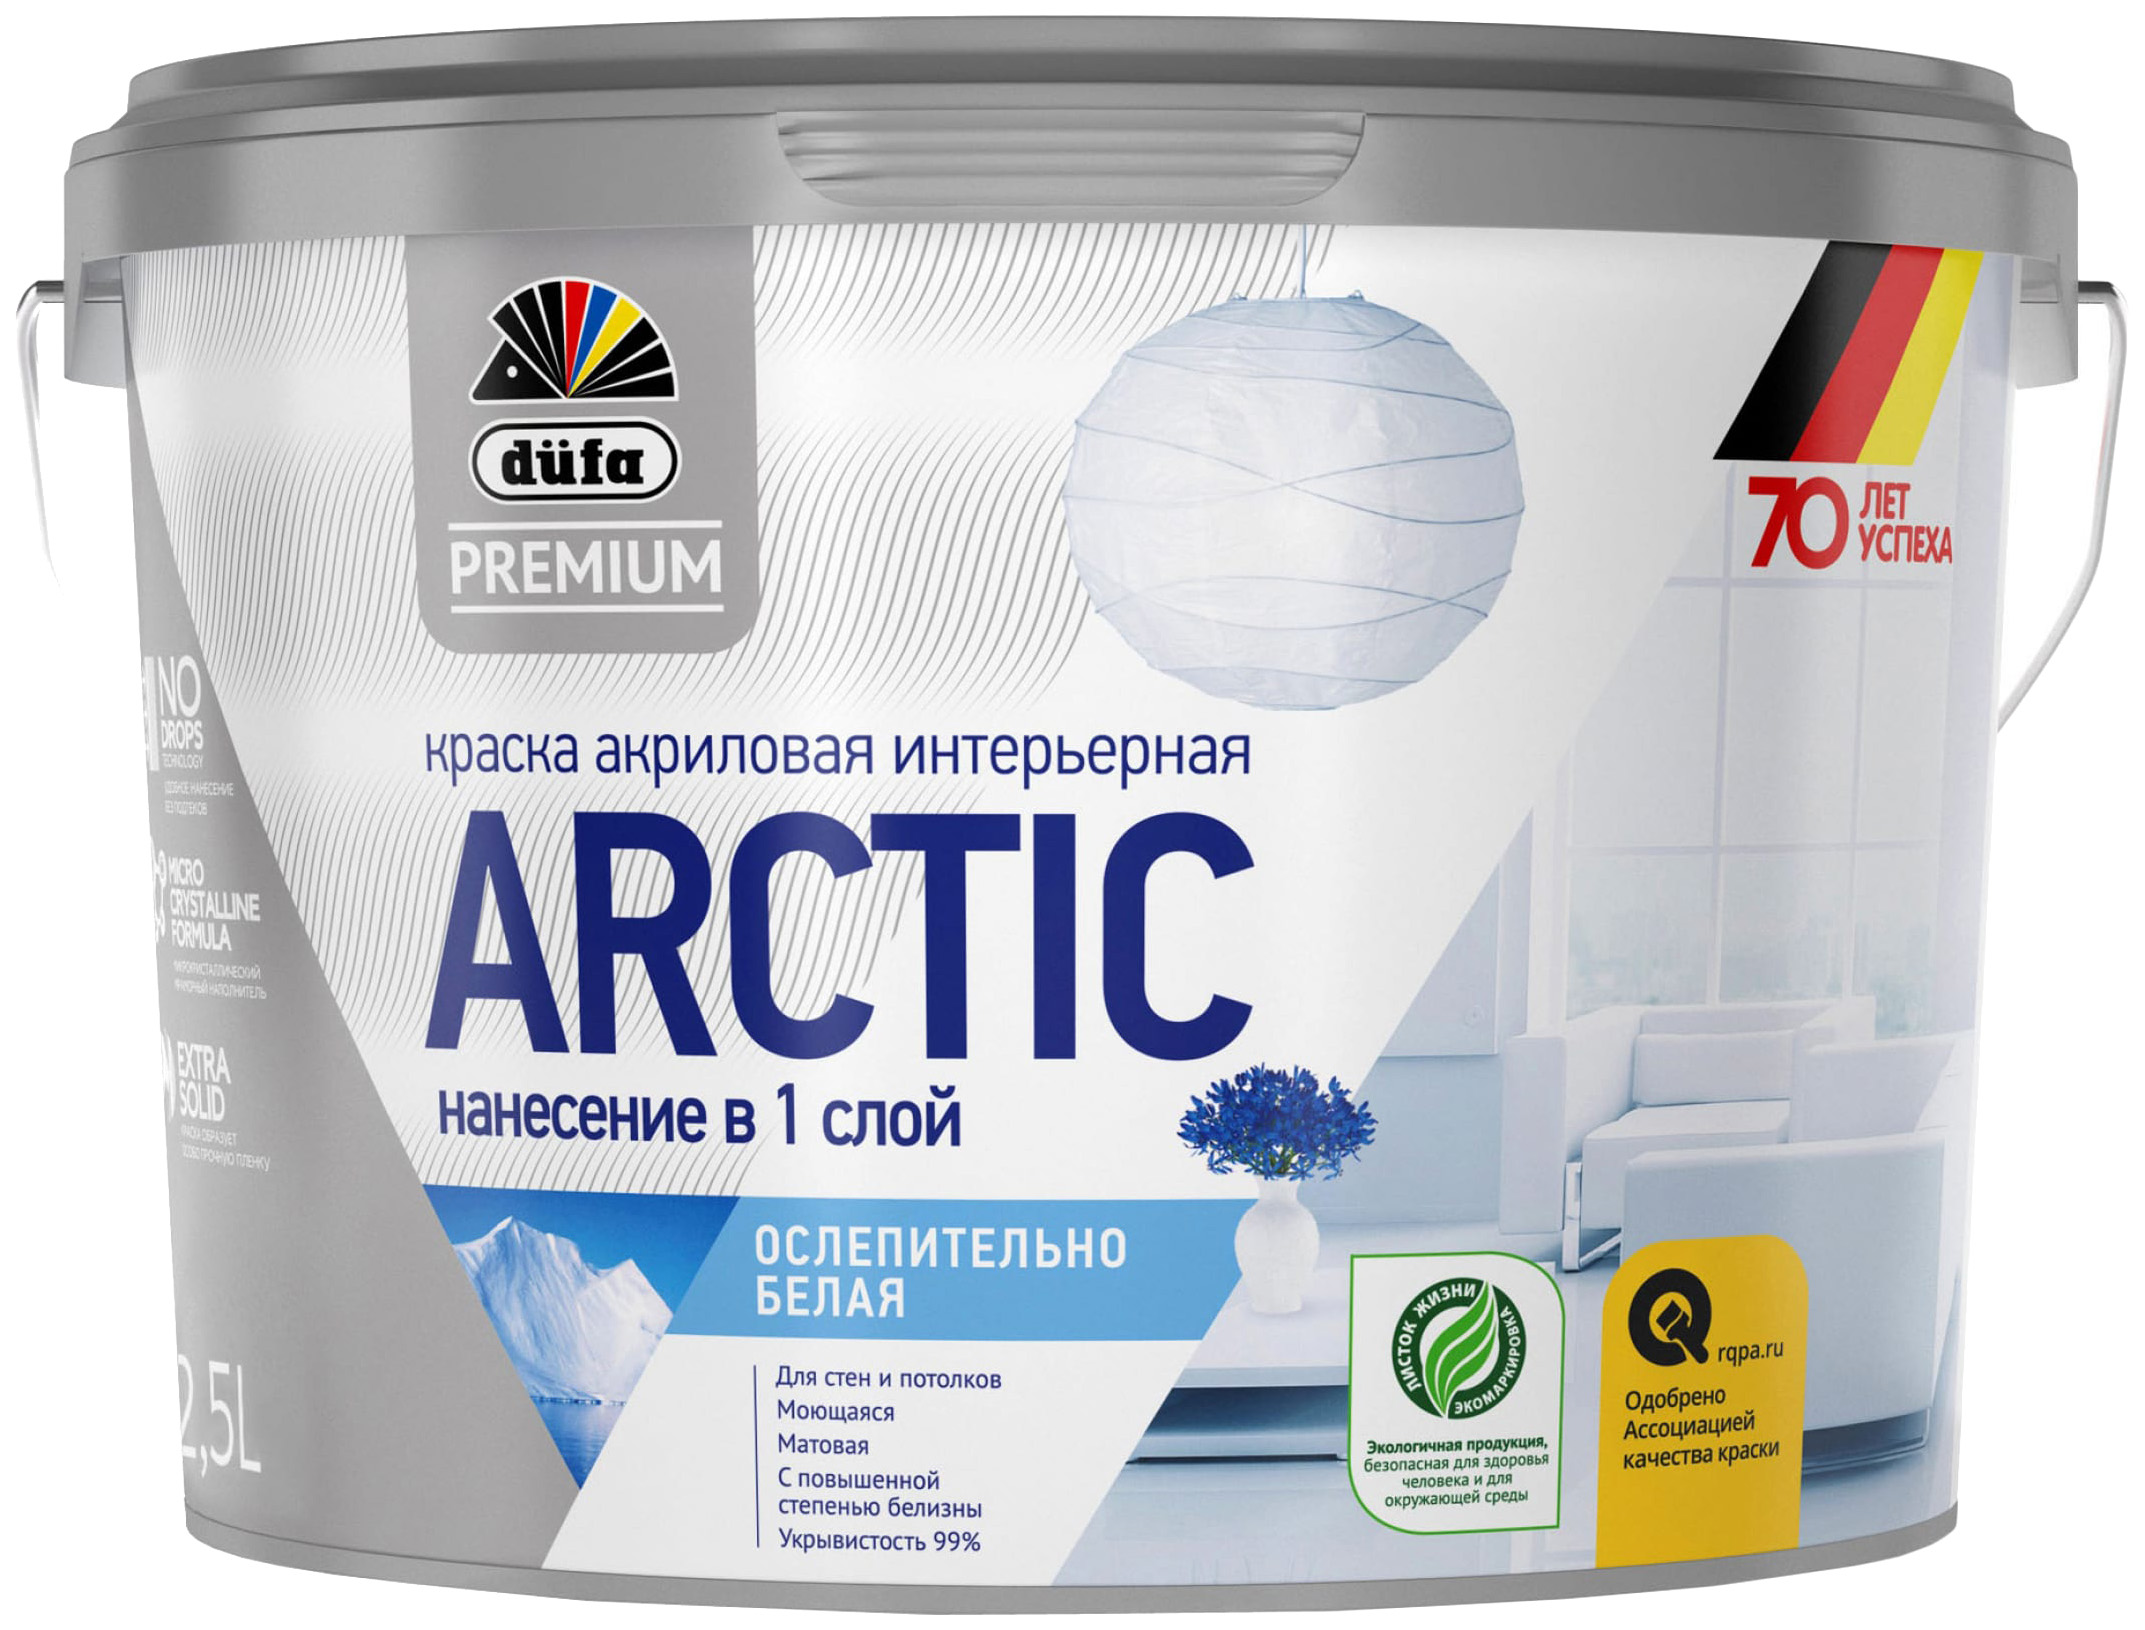 фото Dufa premium вд краска arctic акриловая интерьерная ослепительно белая база 1 2,5л н000000